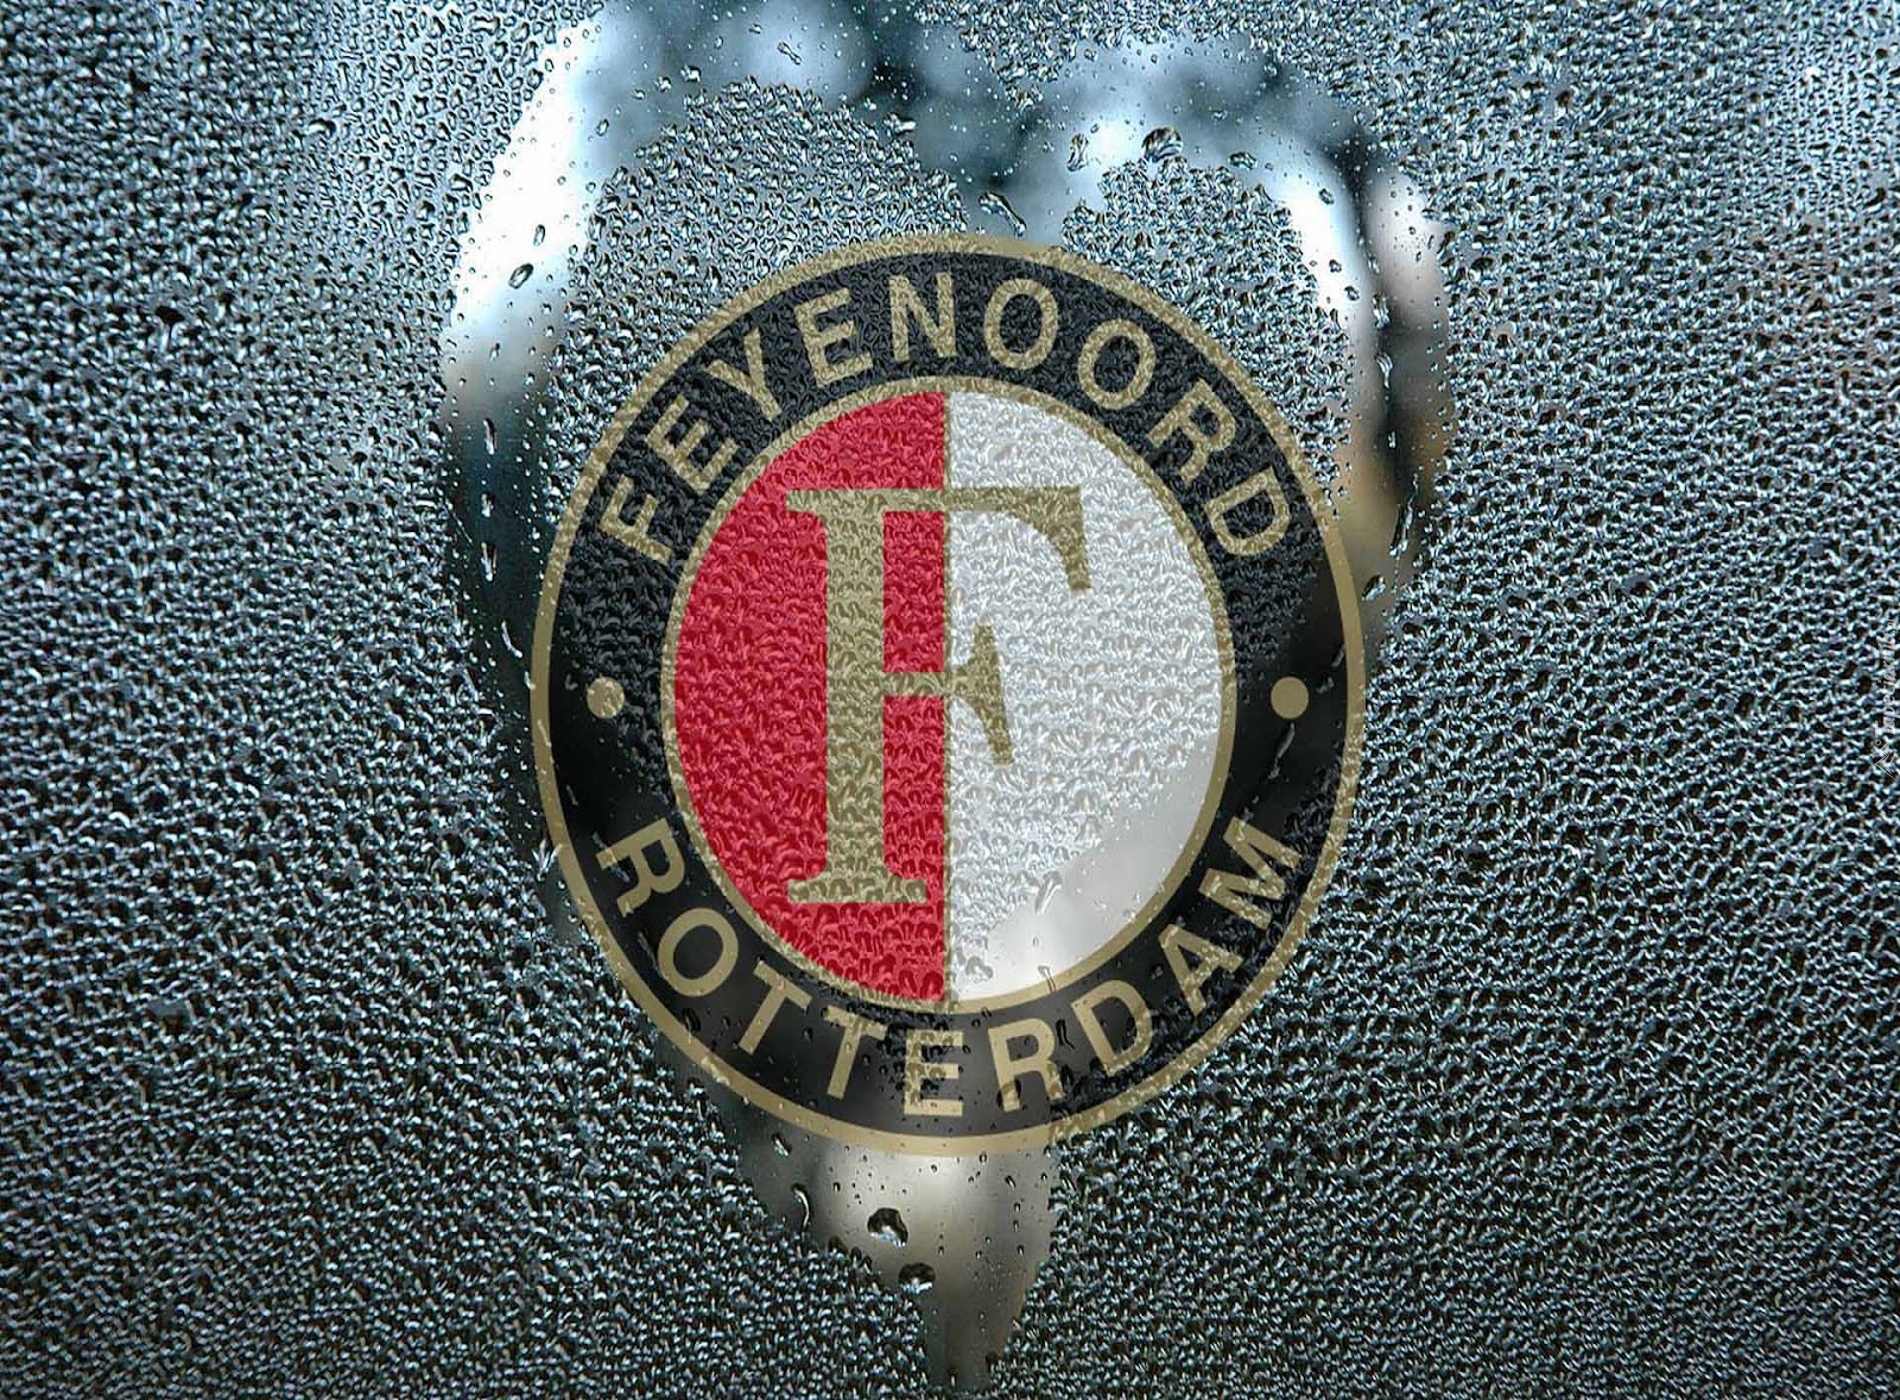 Feyenoord Rotterdam, piłka nożna, sport